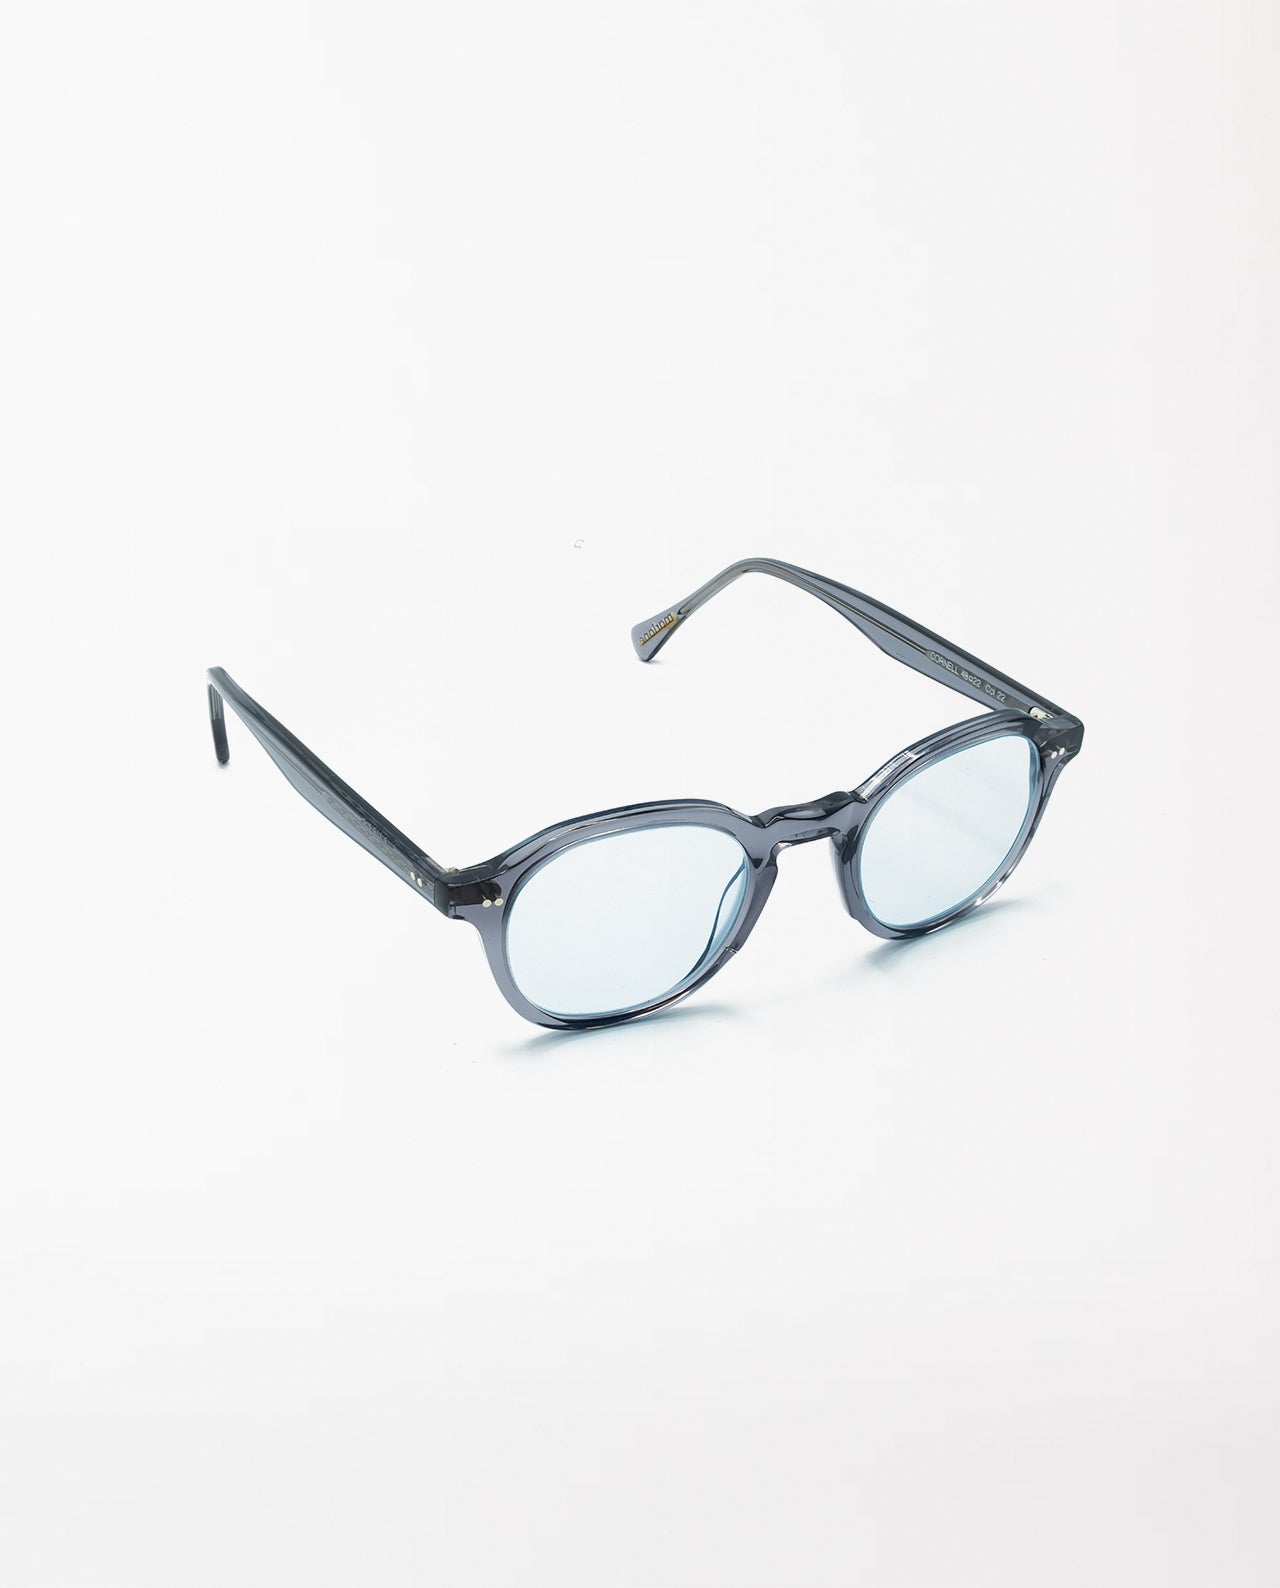 marché commun marlone eyewear lunettes solaires soleil origine france garantie cornell pastel blue gris sélenite